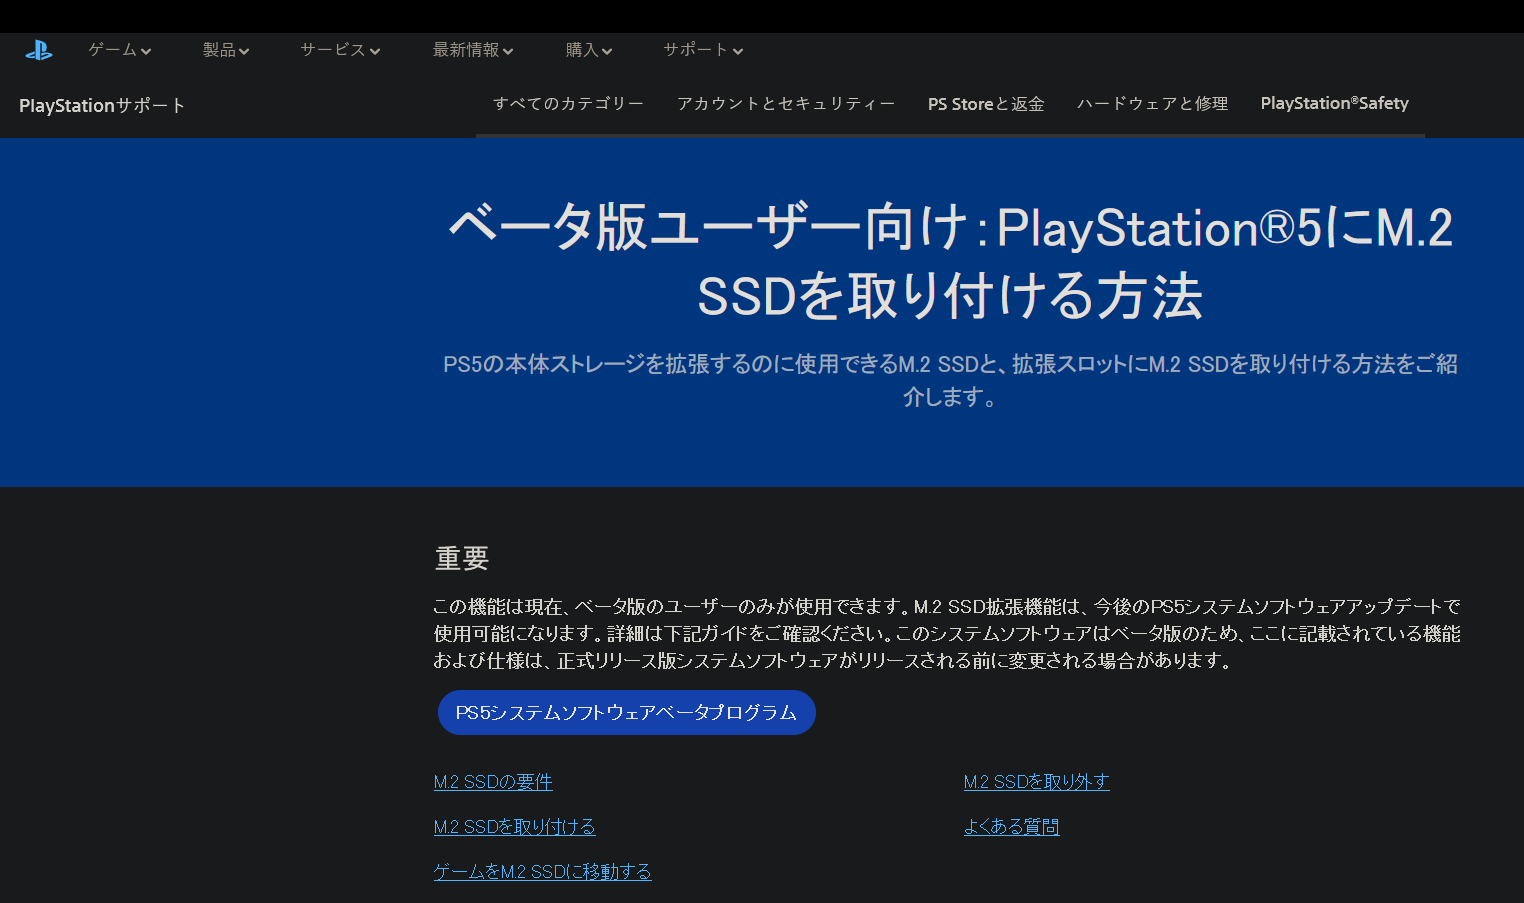 PS5新测试版固件部分地区上线 新增M.2固态硬盘支持